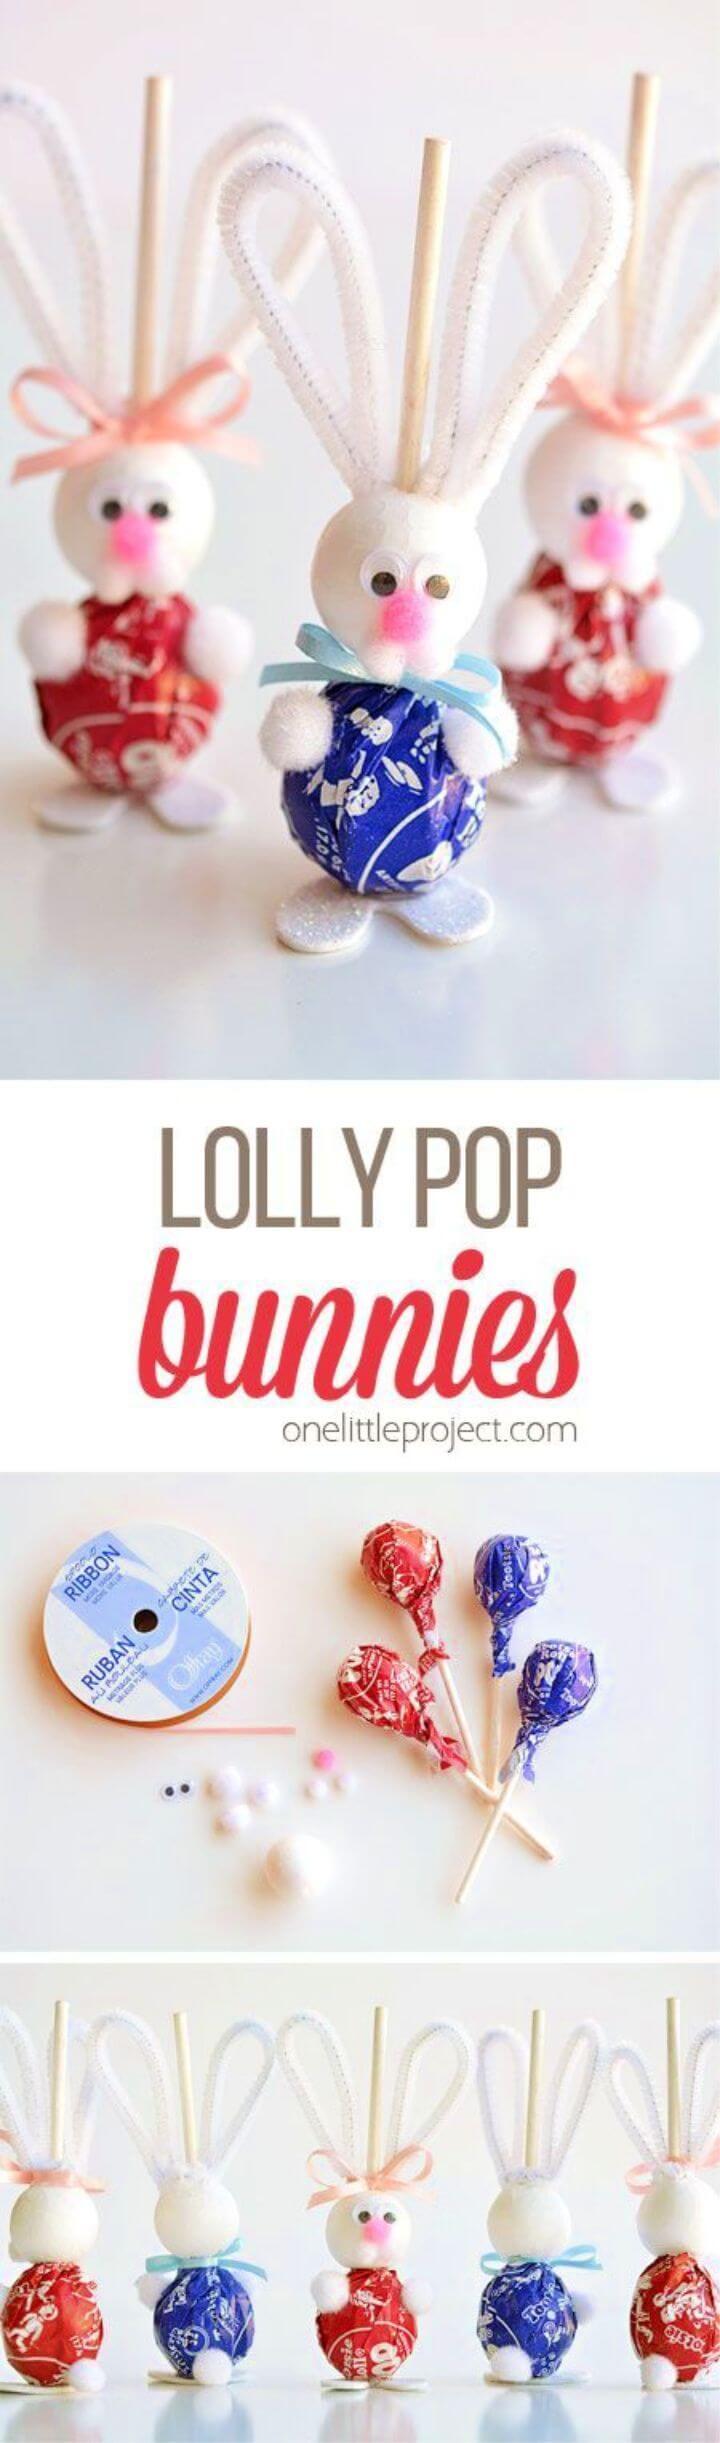 DIY Lolly Pop Bunnies